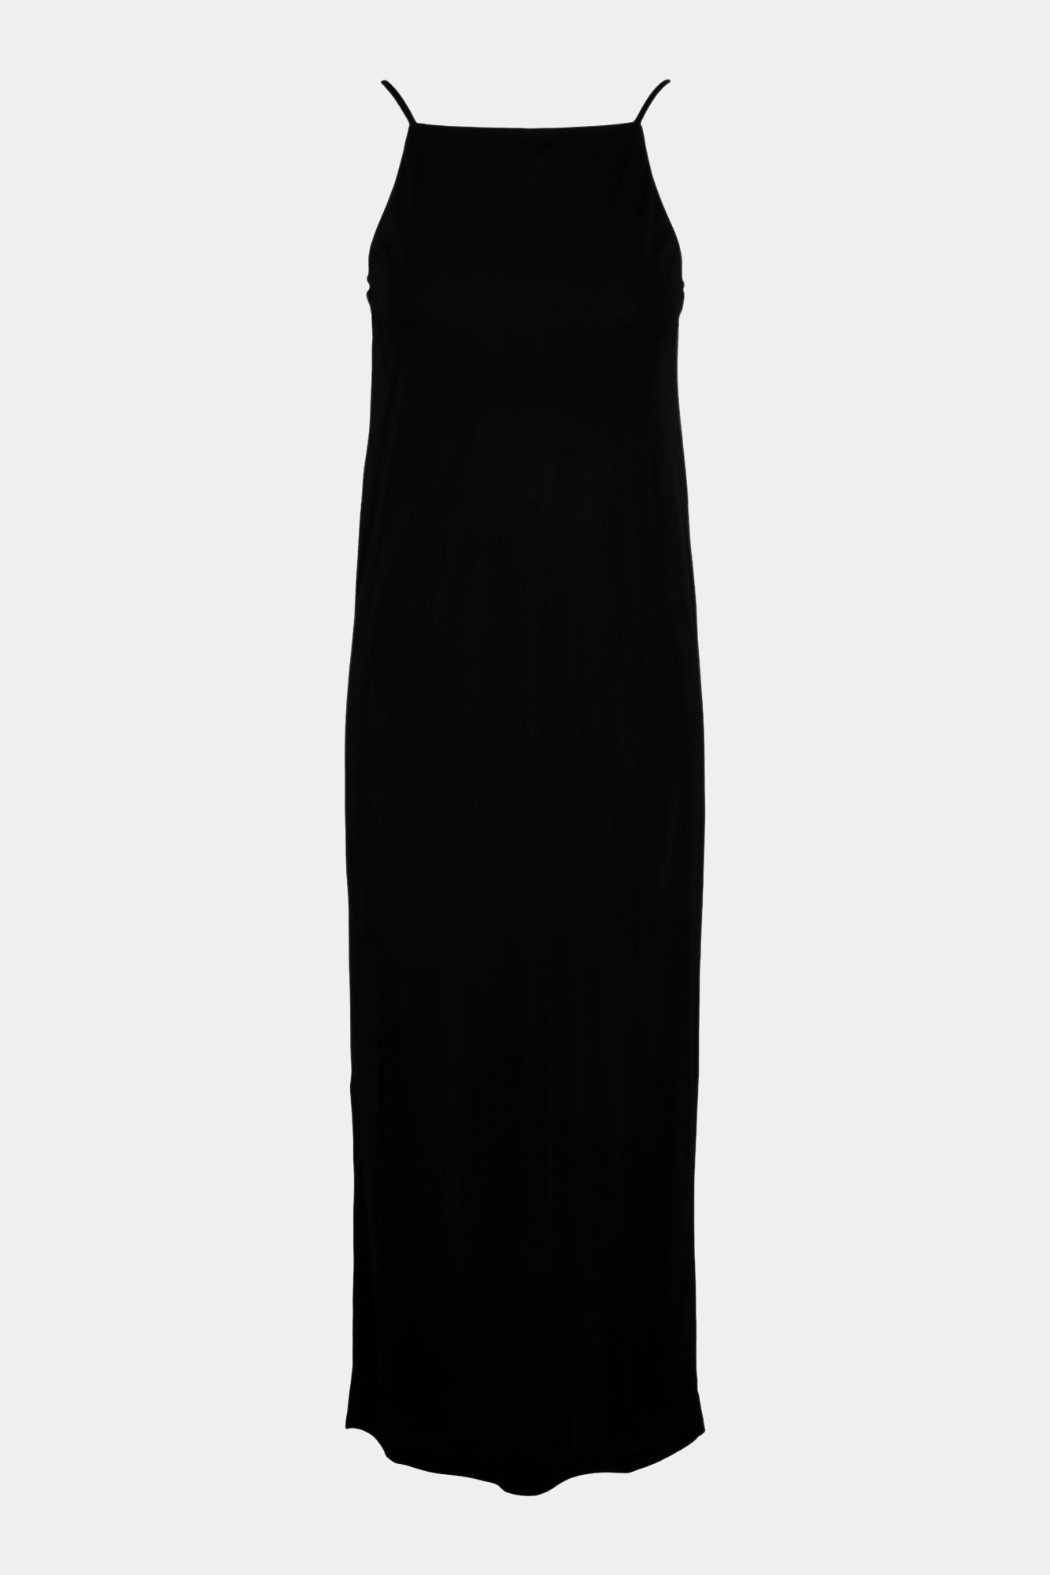 Pieces PCKatelynn strap dress, black – Butik Visholm